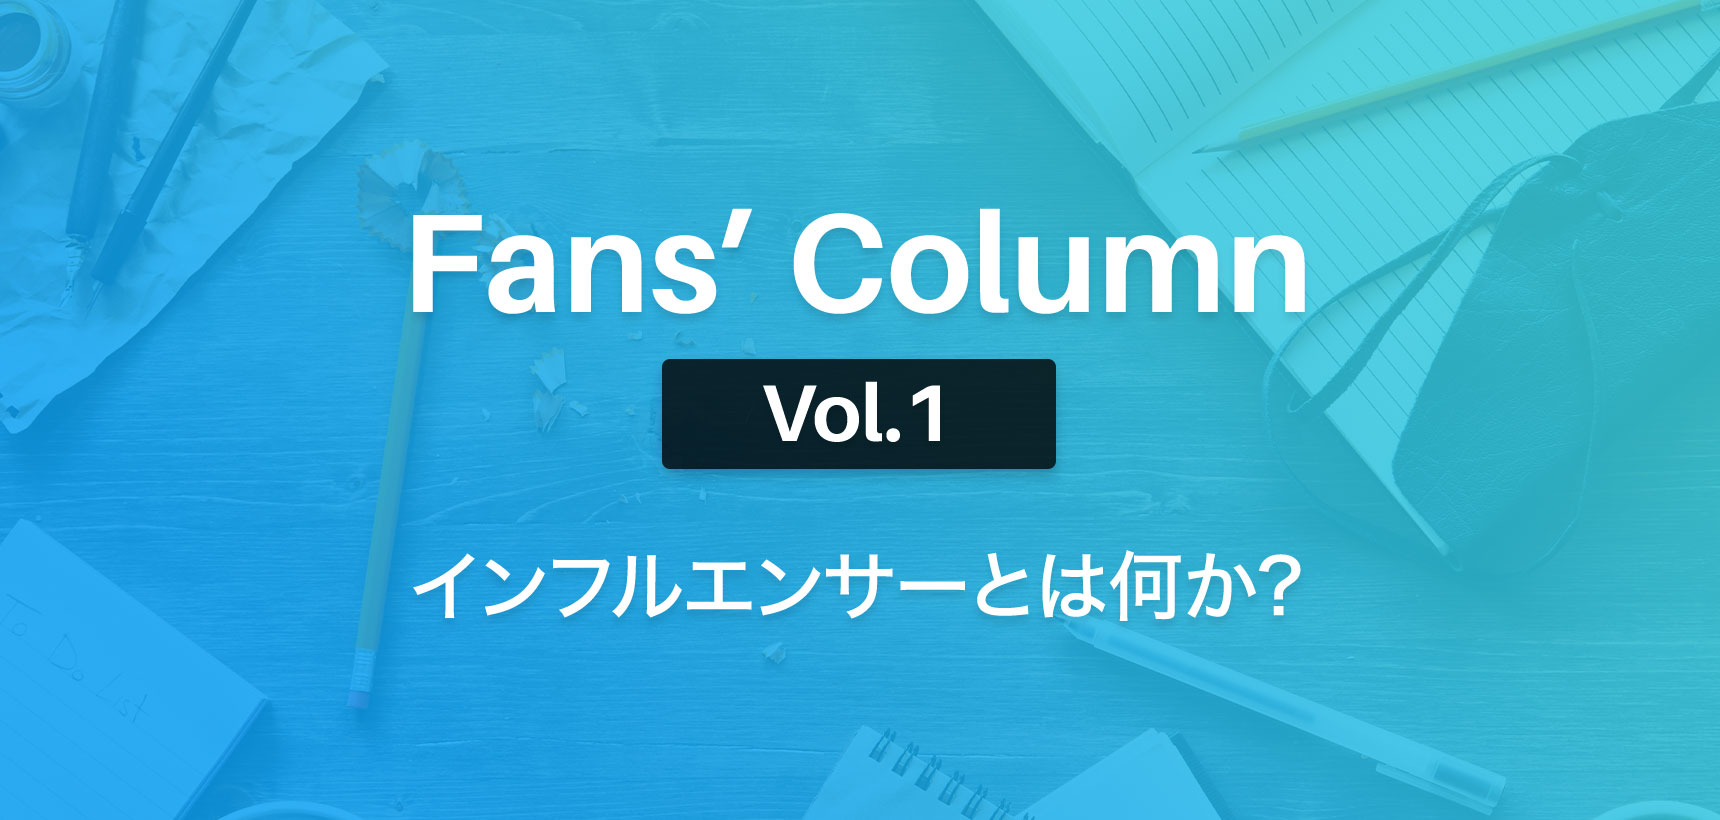 Fans’ Column | ファンズコラム Vol.1 インフルエンサーとは何か?